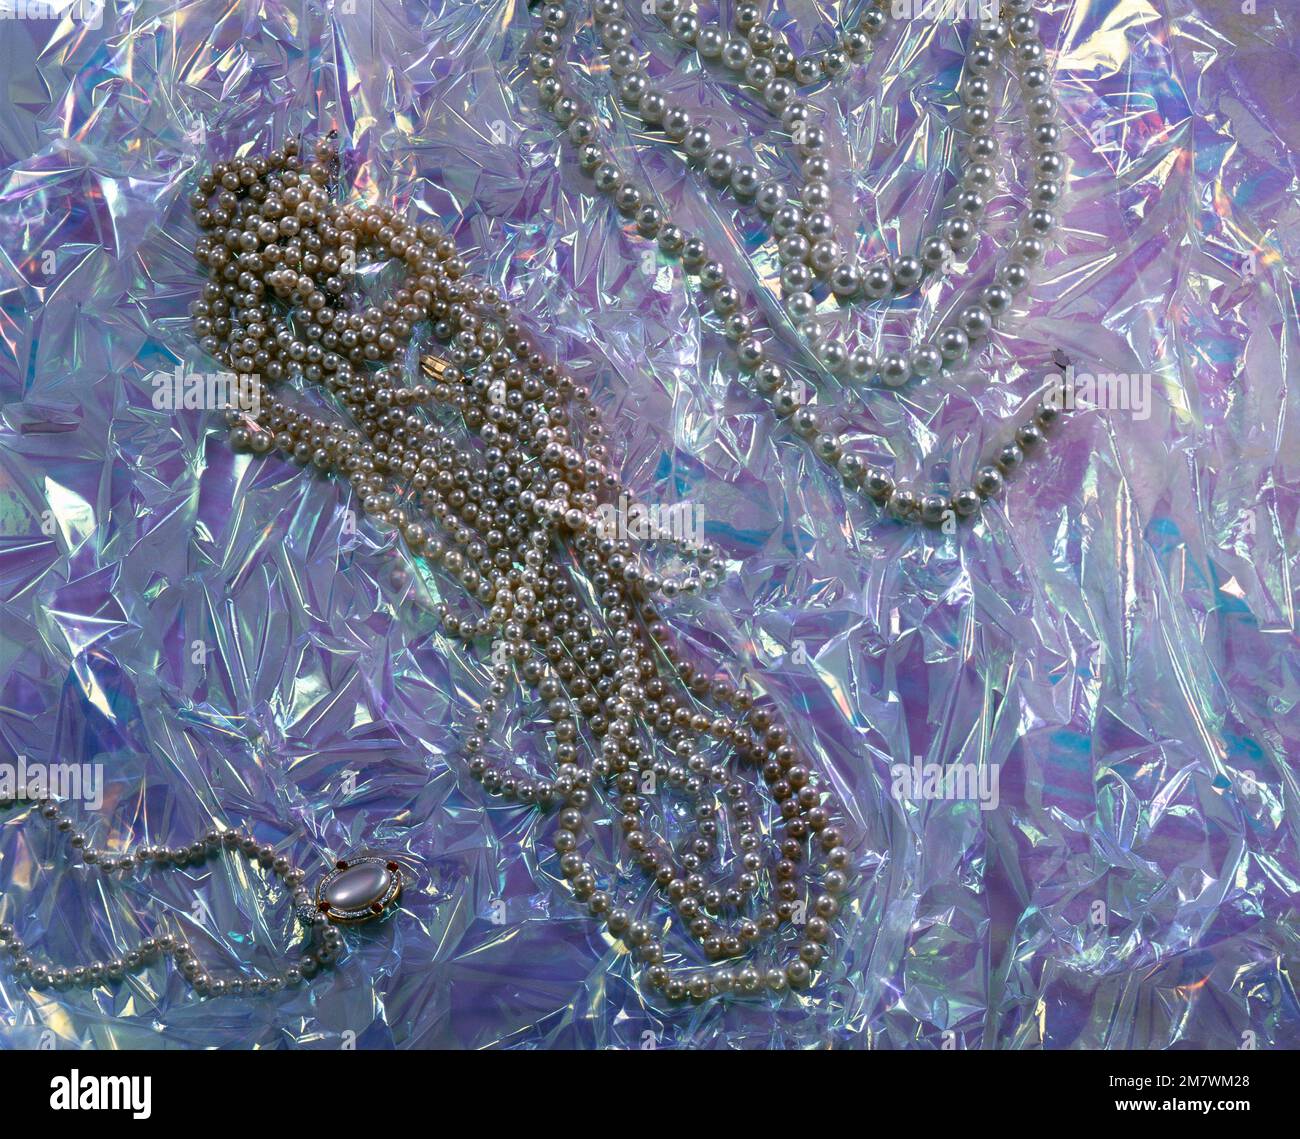 Pearl necklaces on a plastic background with magenta and blue reflections - Collane di perle su fondo di plastica con riflessi magenta e blu. Stock Photo